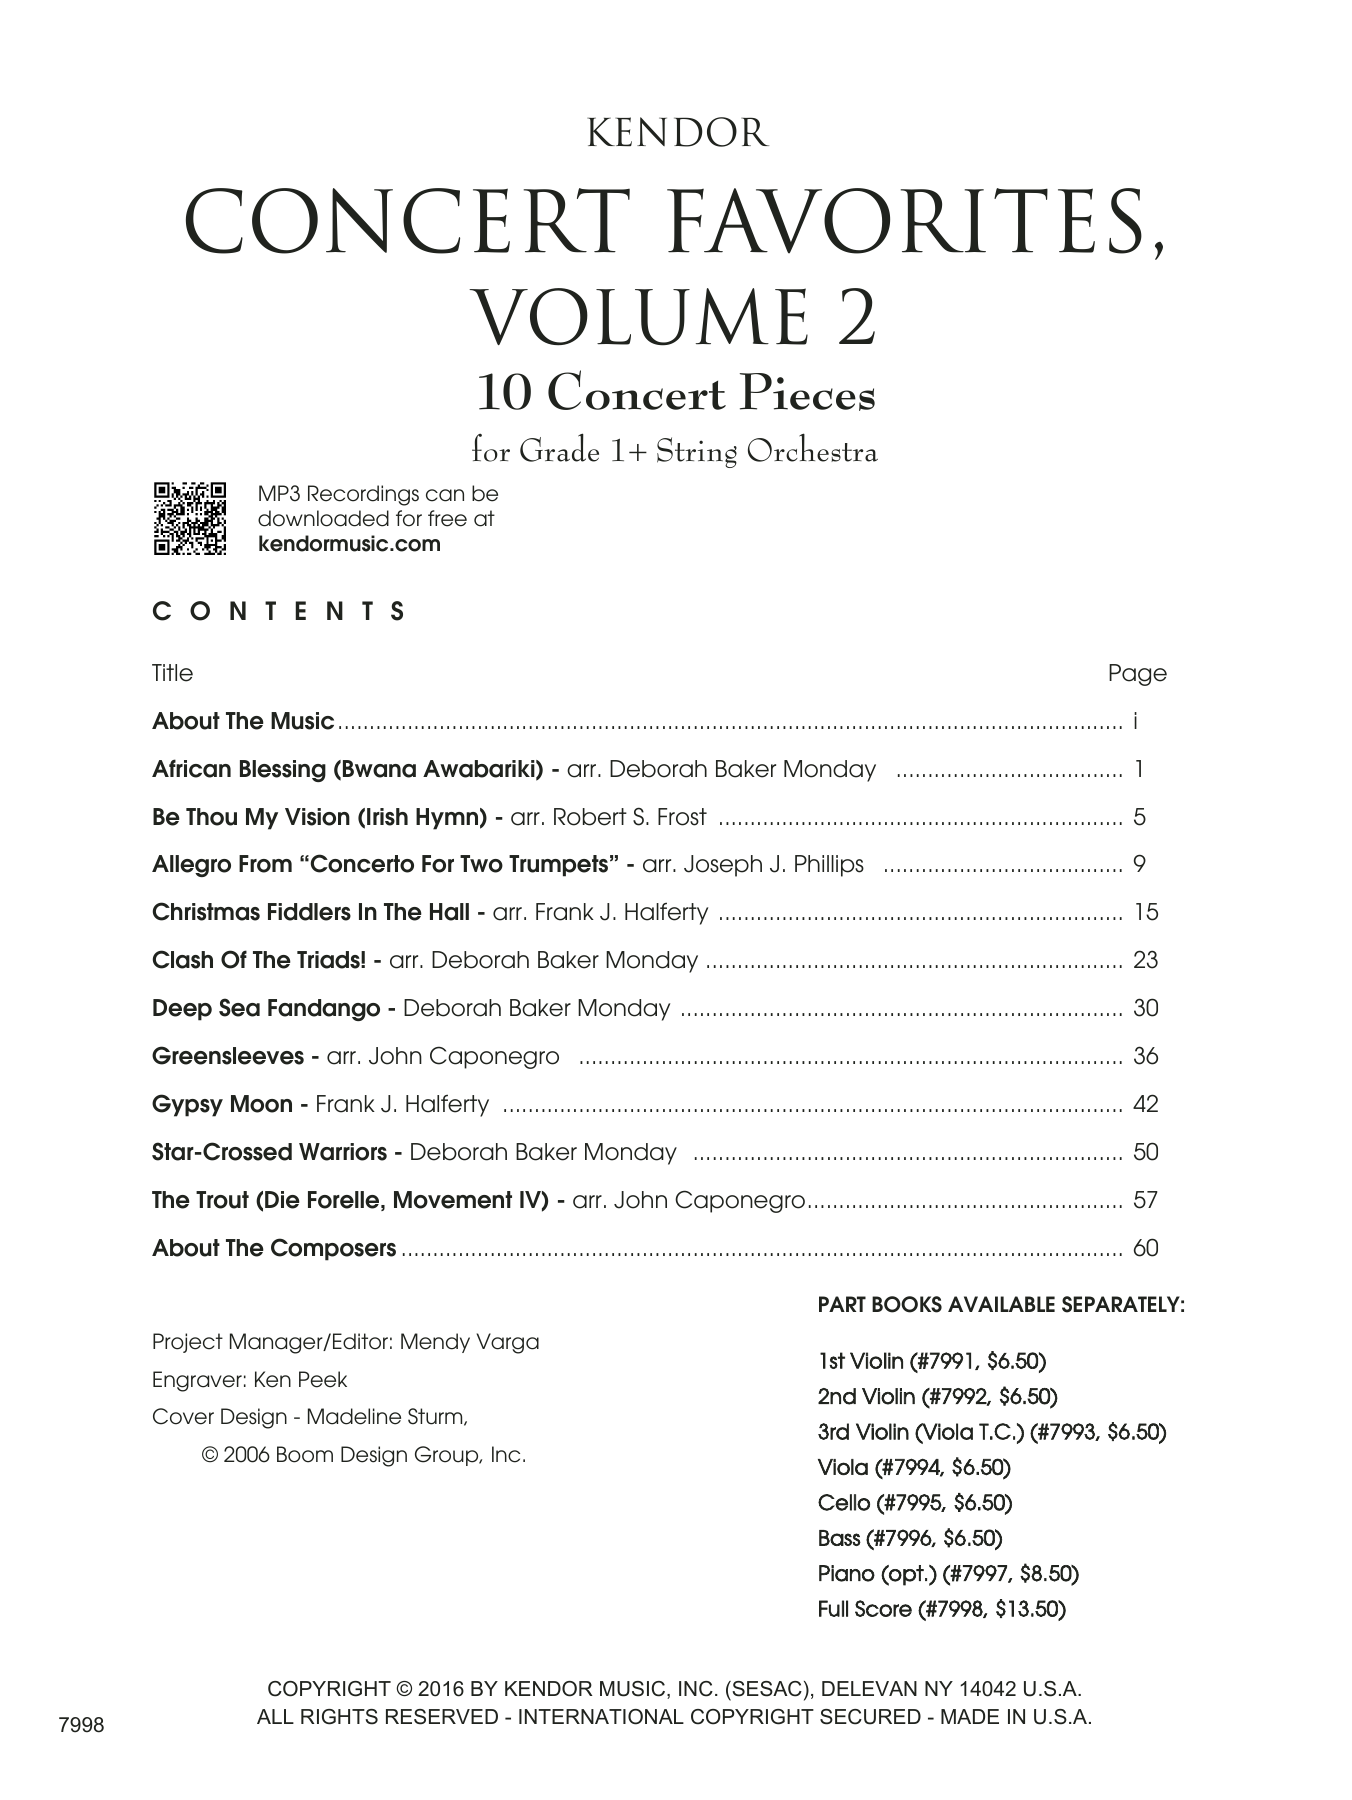 Kendor Concert Favorites, Volume 2 - Full Score - Full Score (Orchestra) von Various